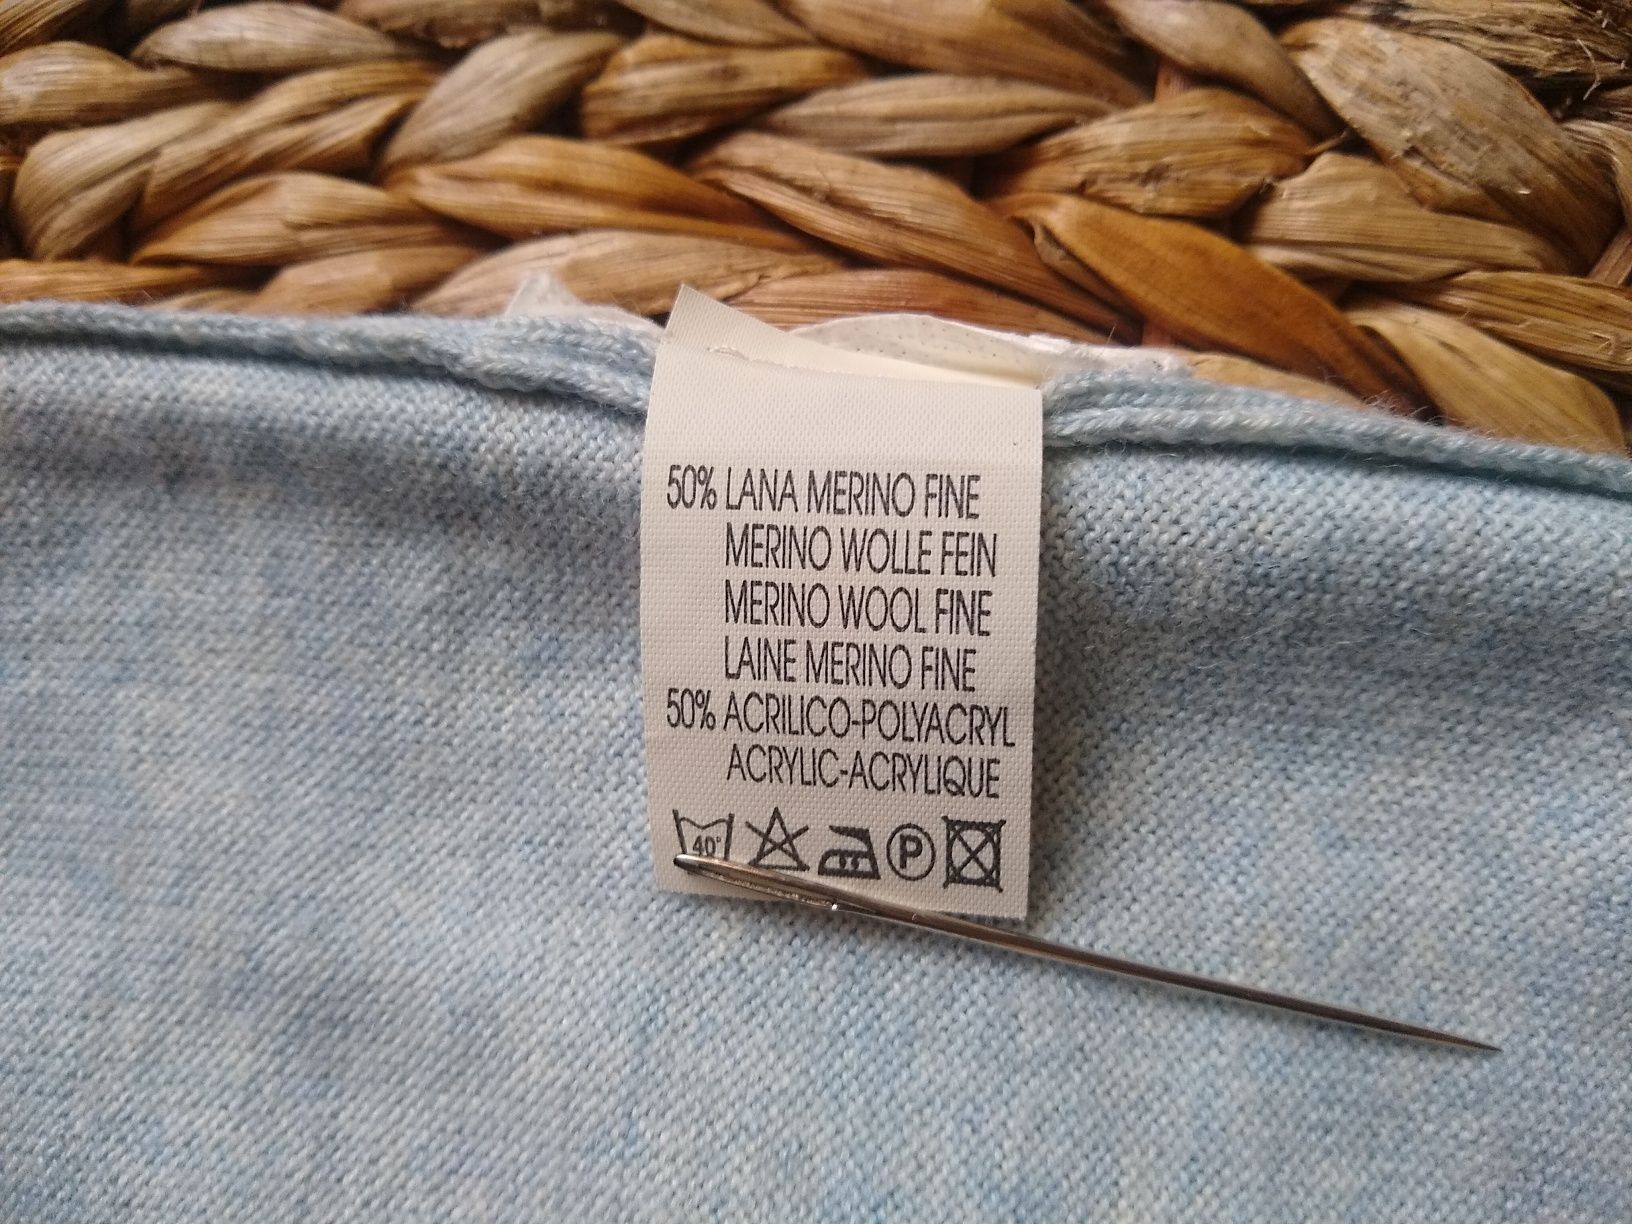 Juliano, Made in Italy, Elegancki męski sweter, 50% Merino